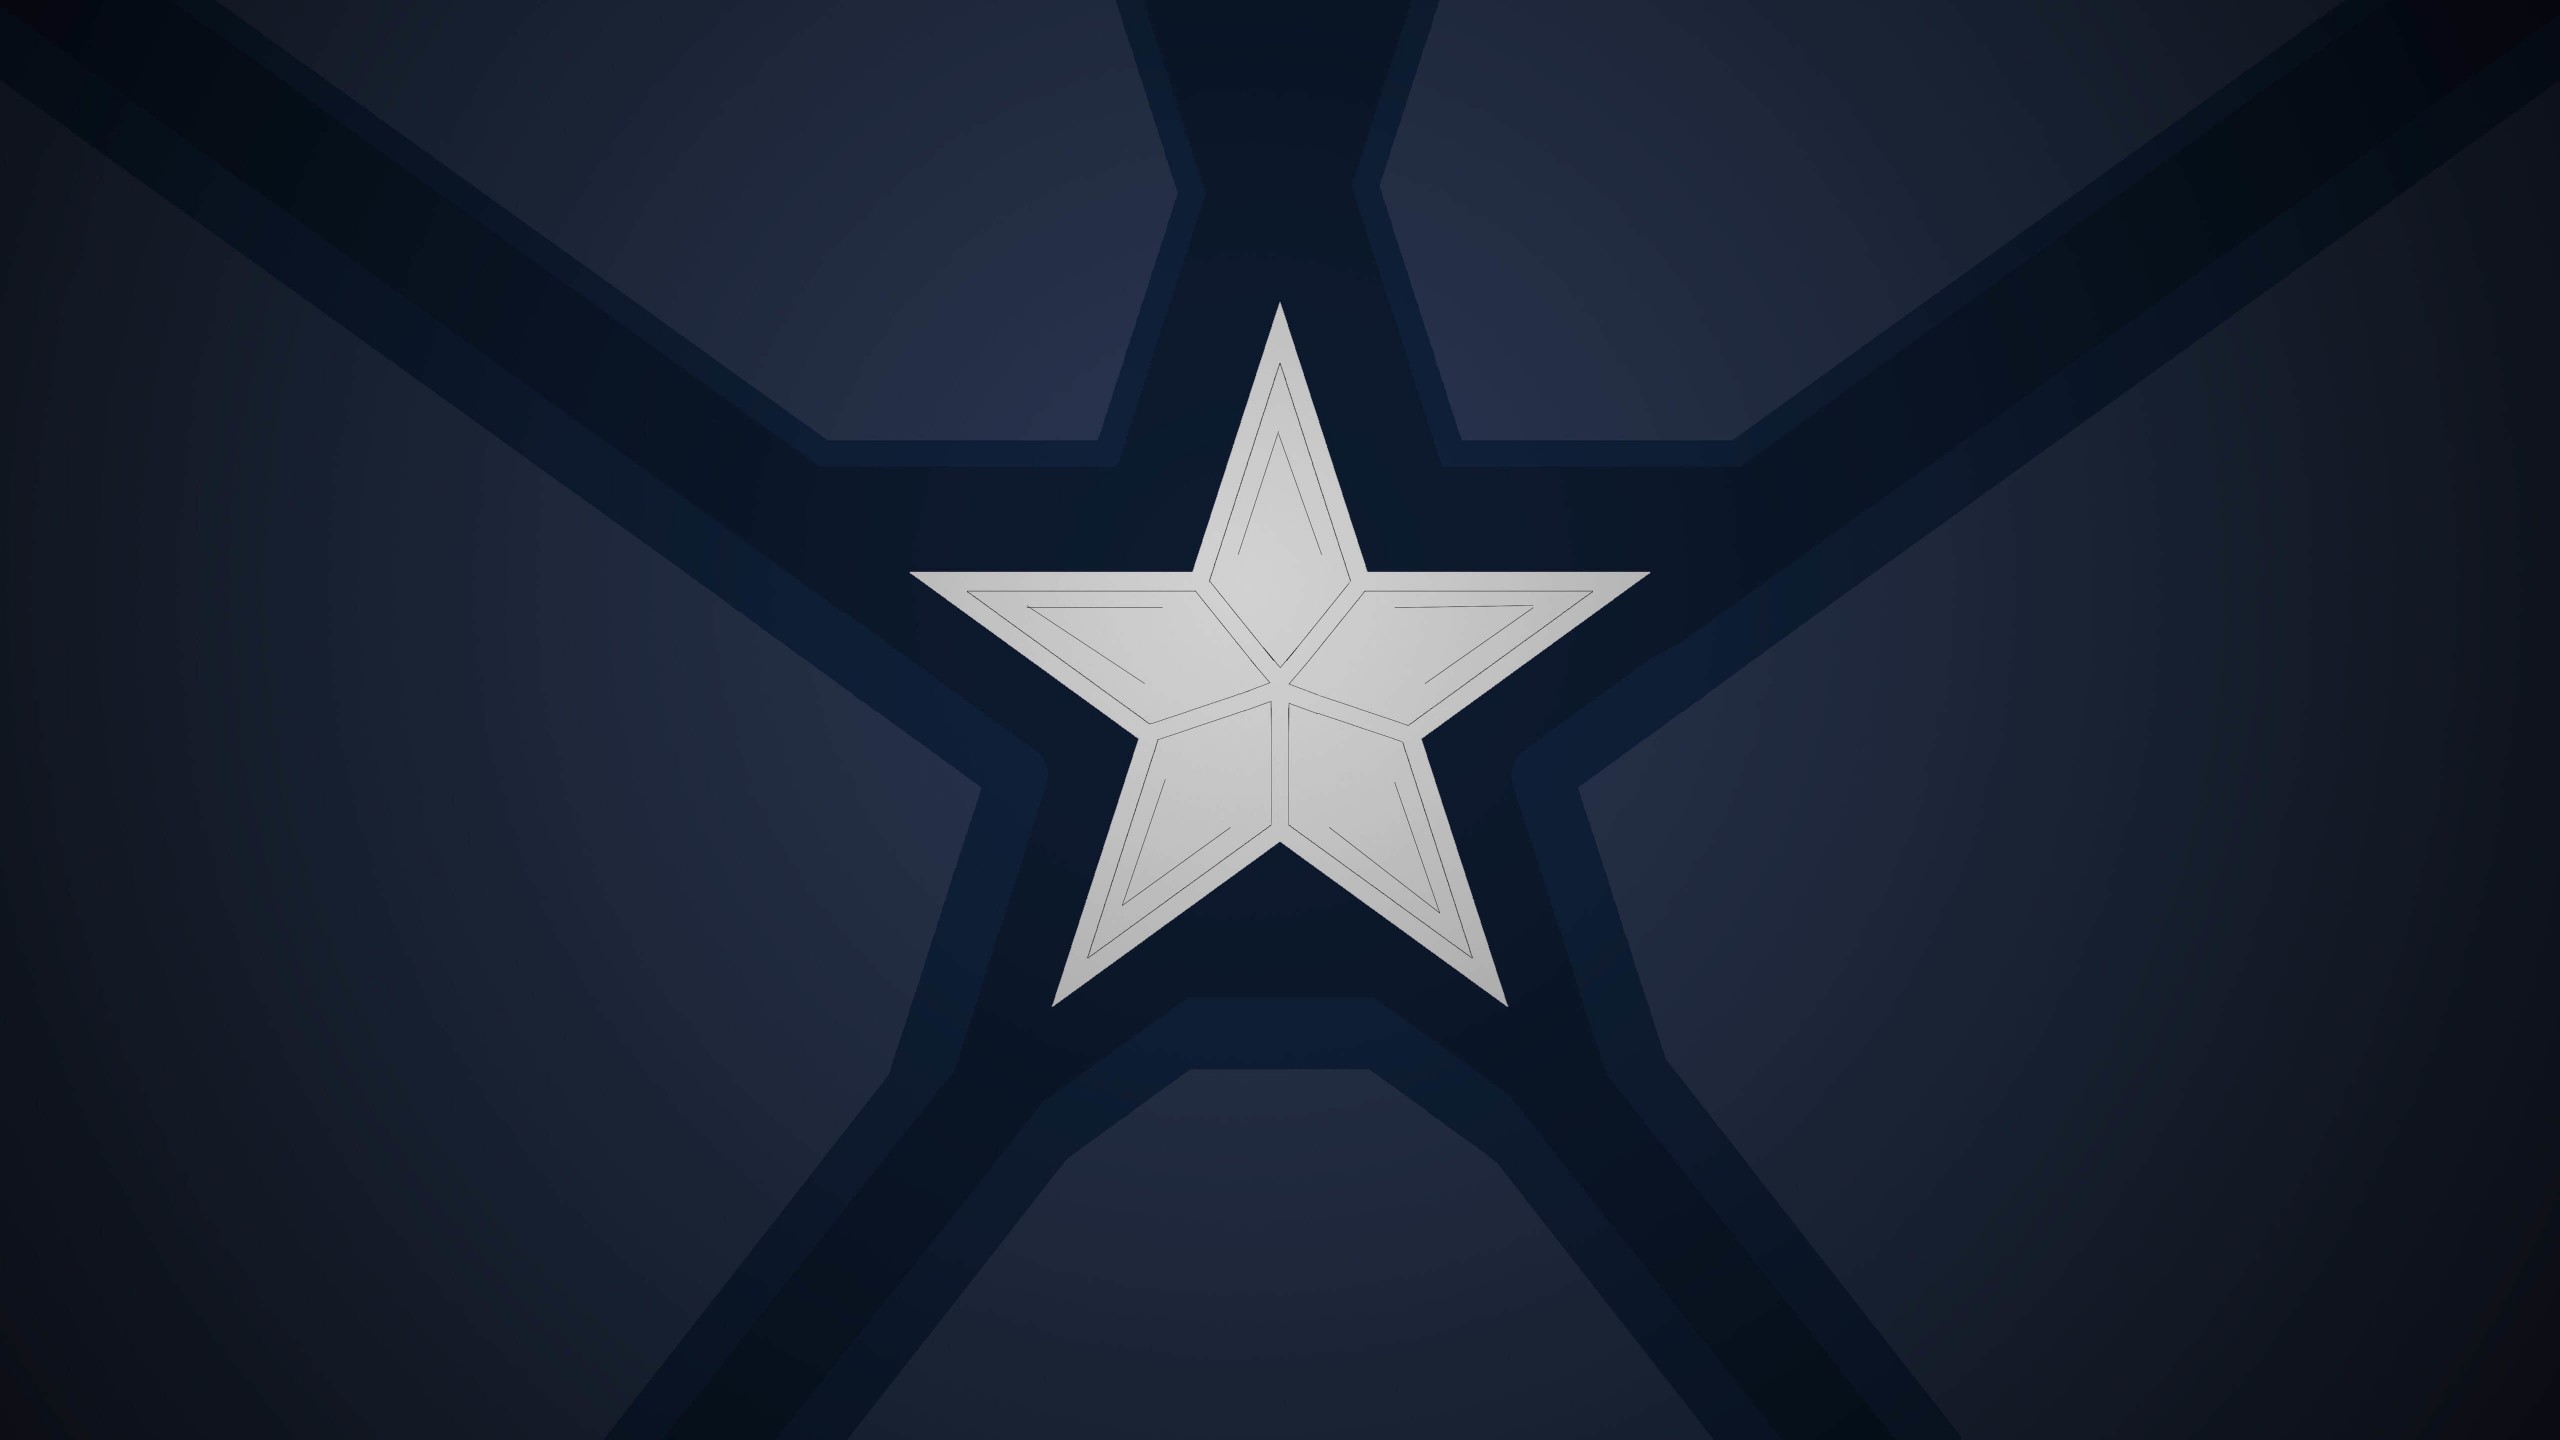 Captain America Emblem Wallpaper for Social Media YouTube Channel Art